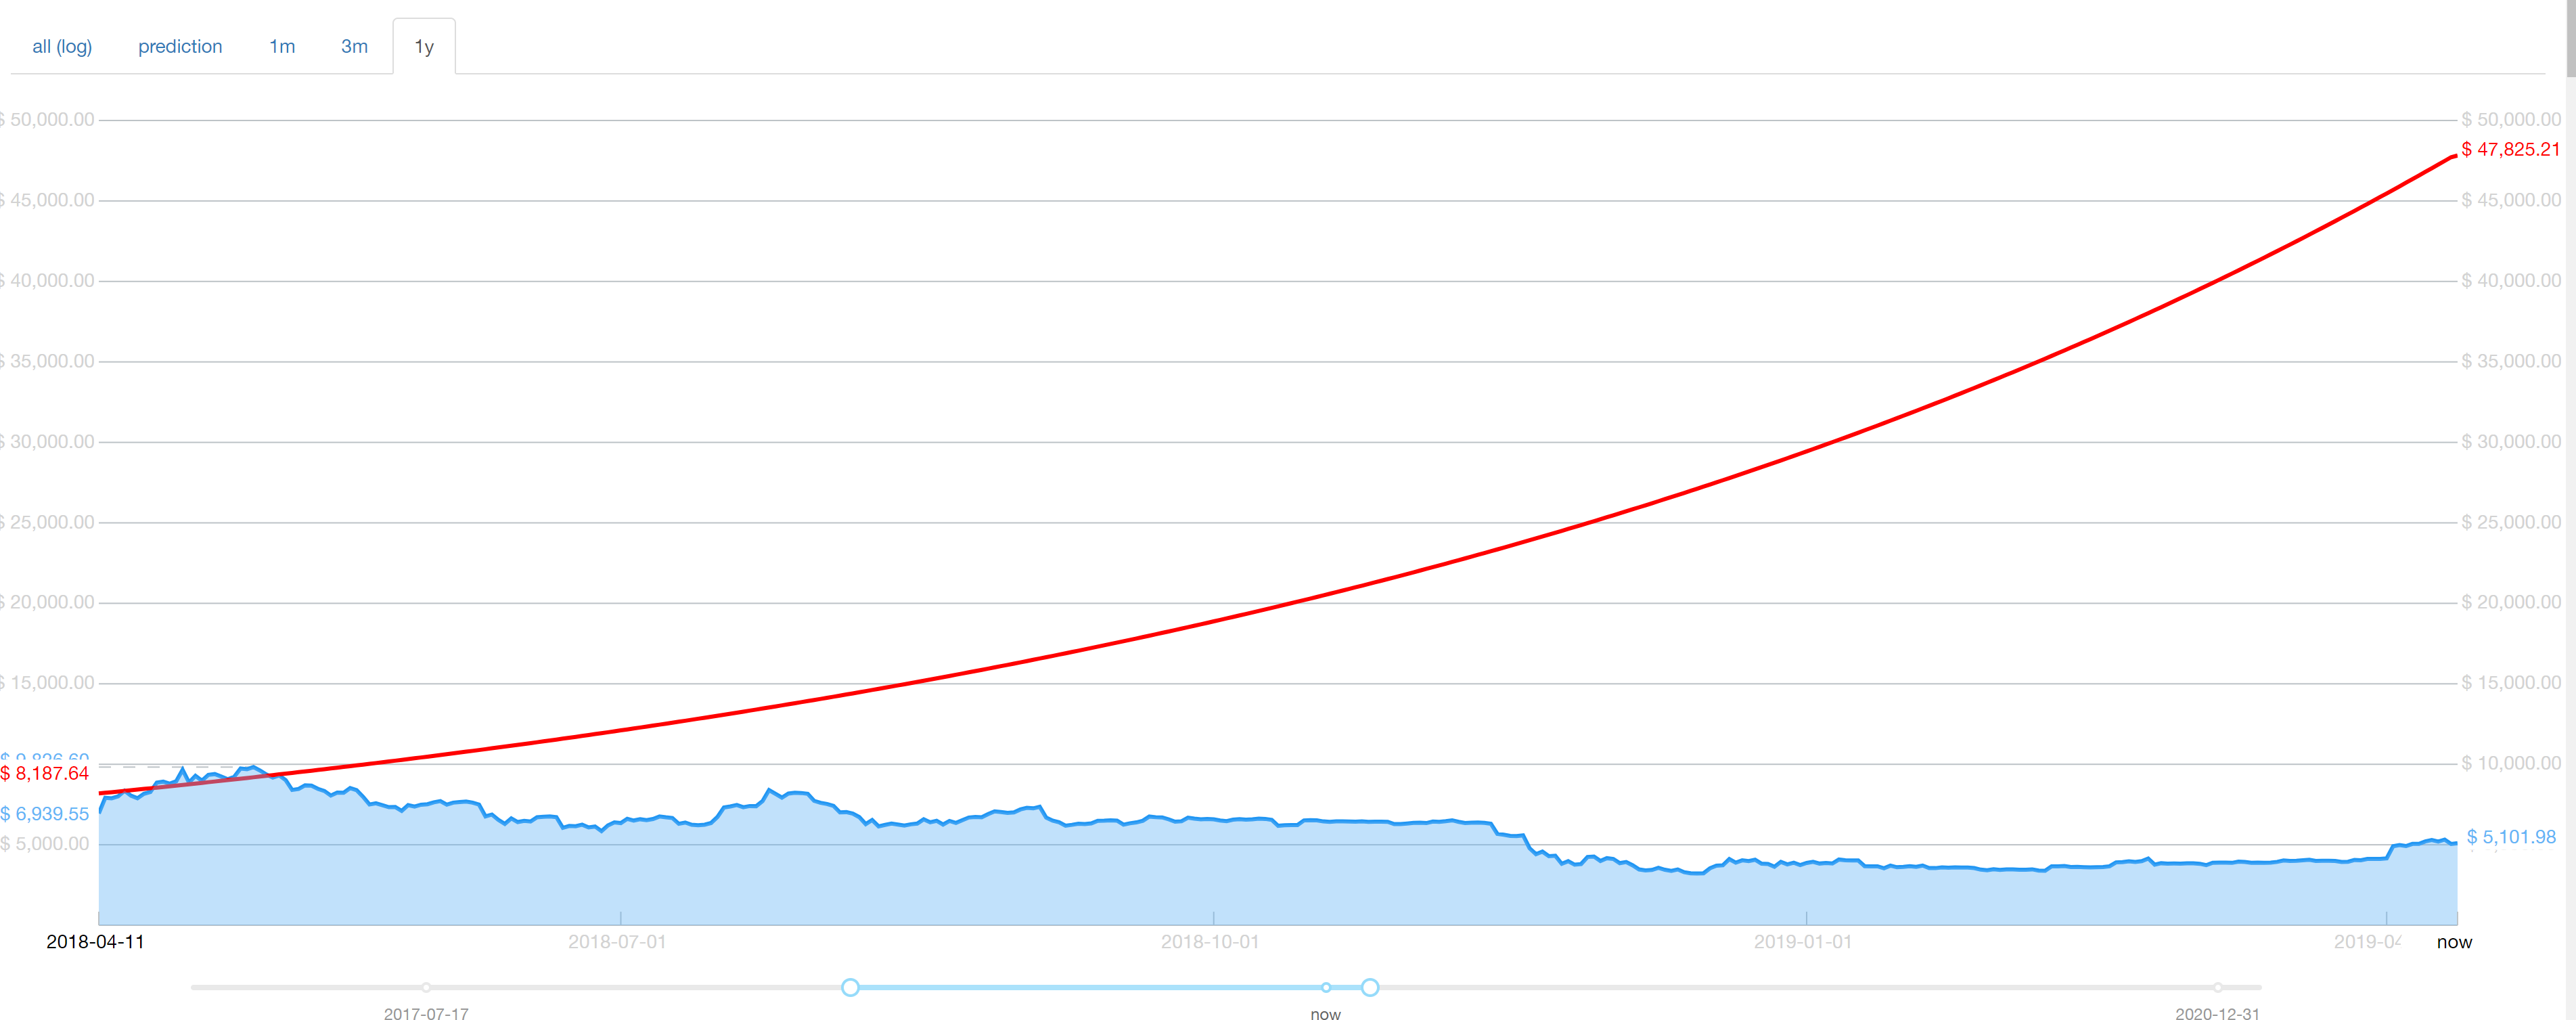 Mcafee Makes A Small Win In His 1 Million Bitcoin Price Prediction - 